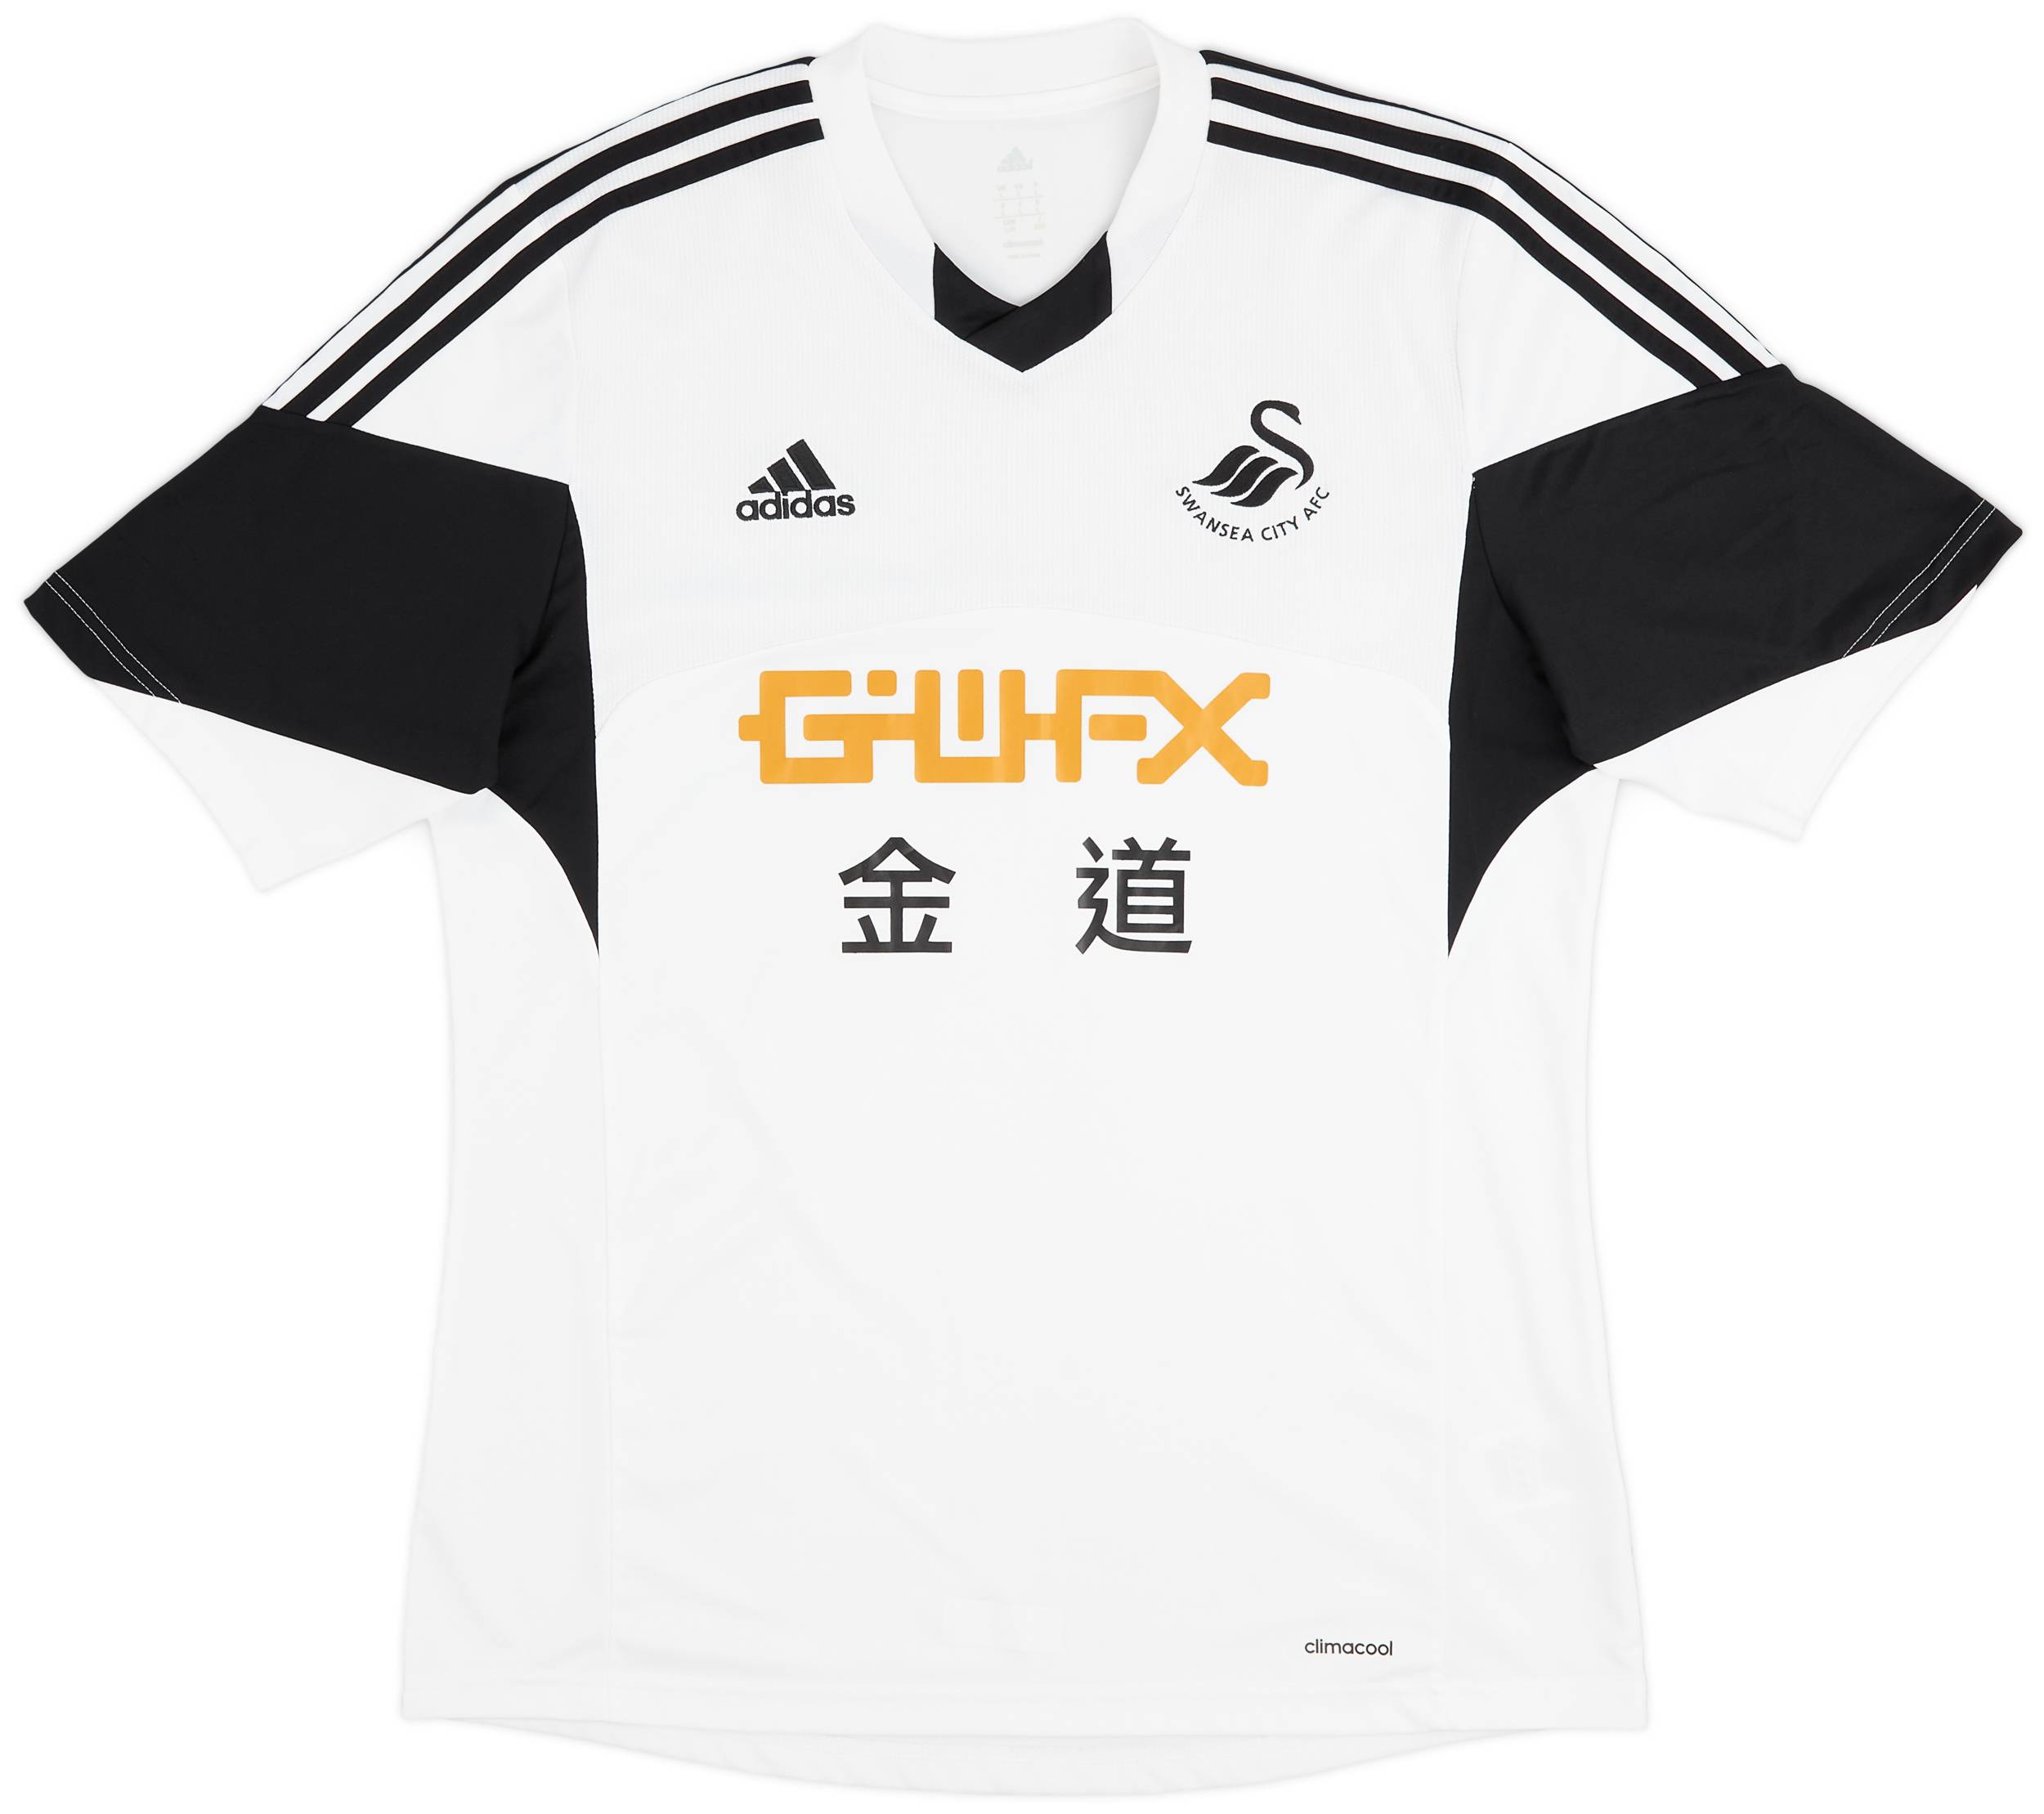 2013-14 Swansea Home Shirt - 9/10 - (L)